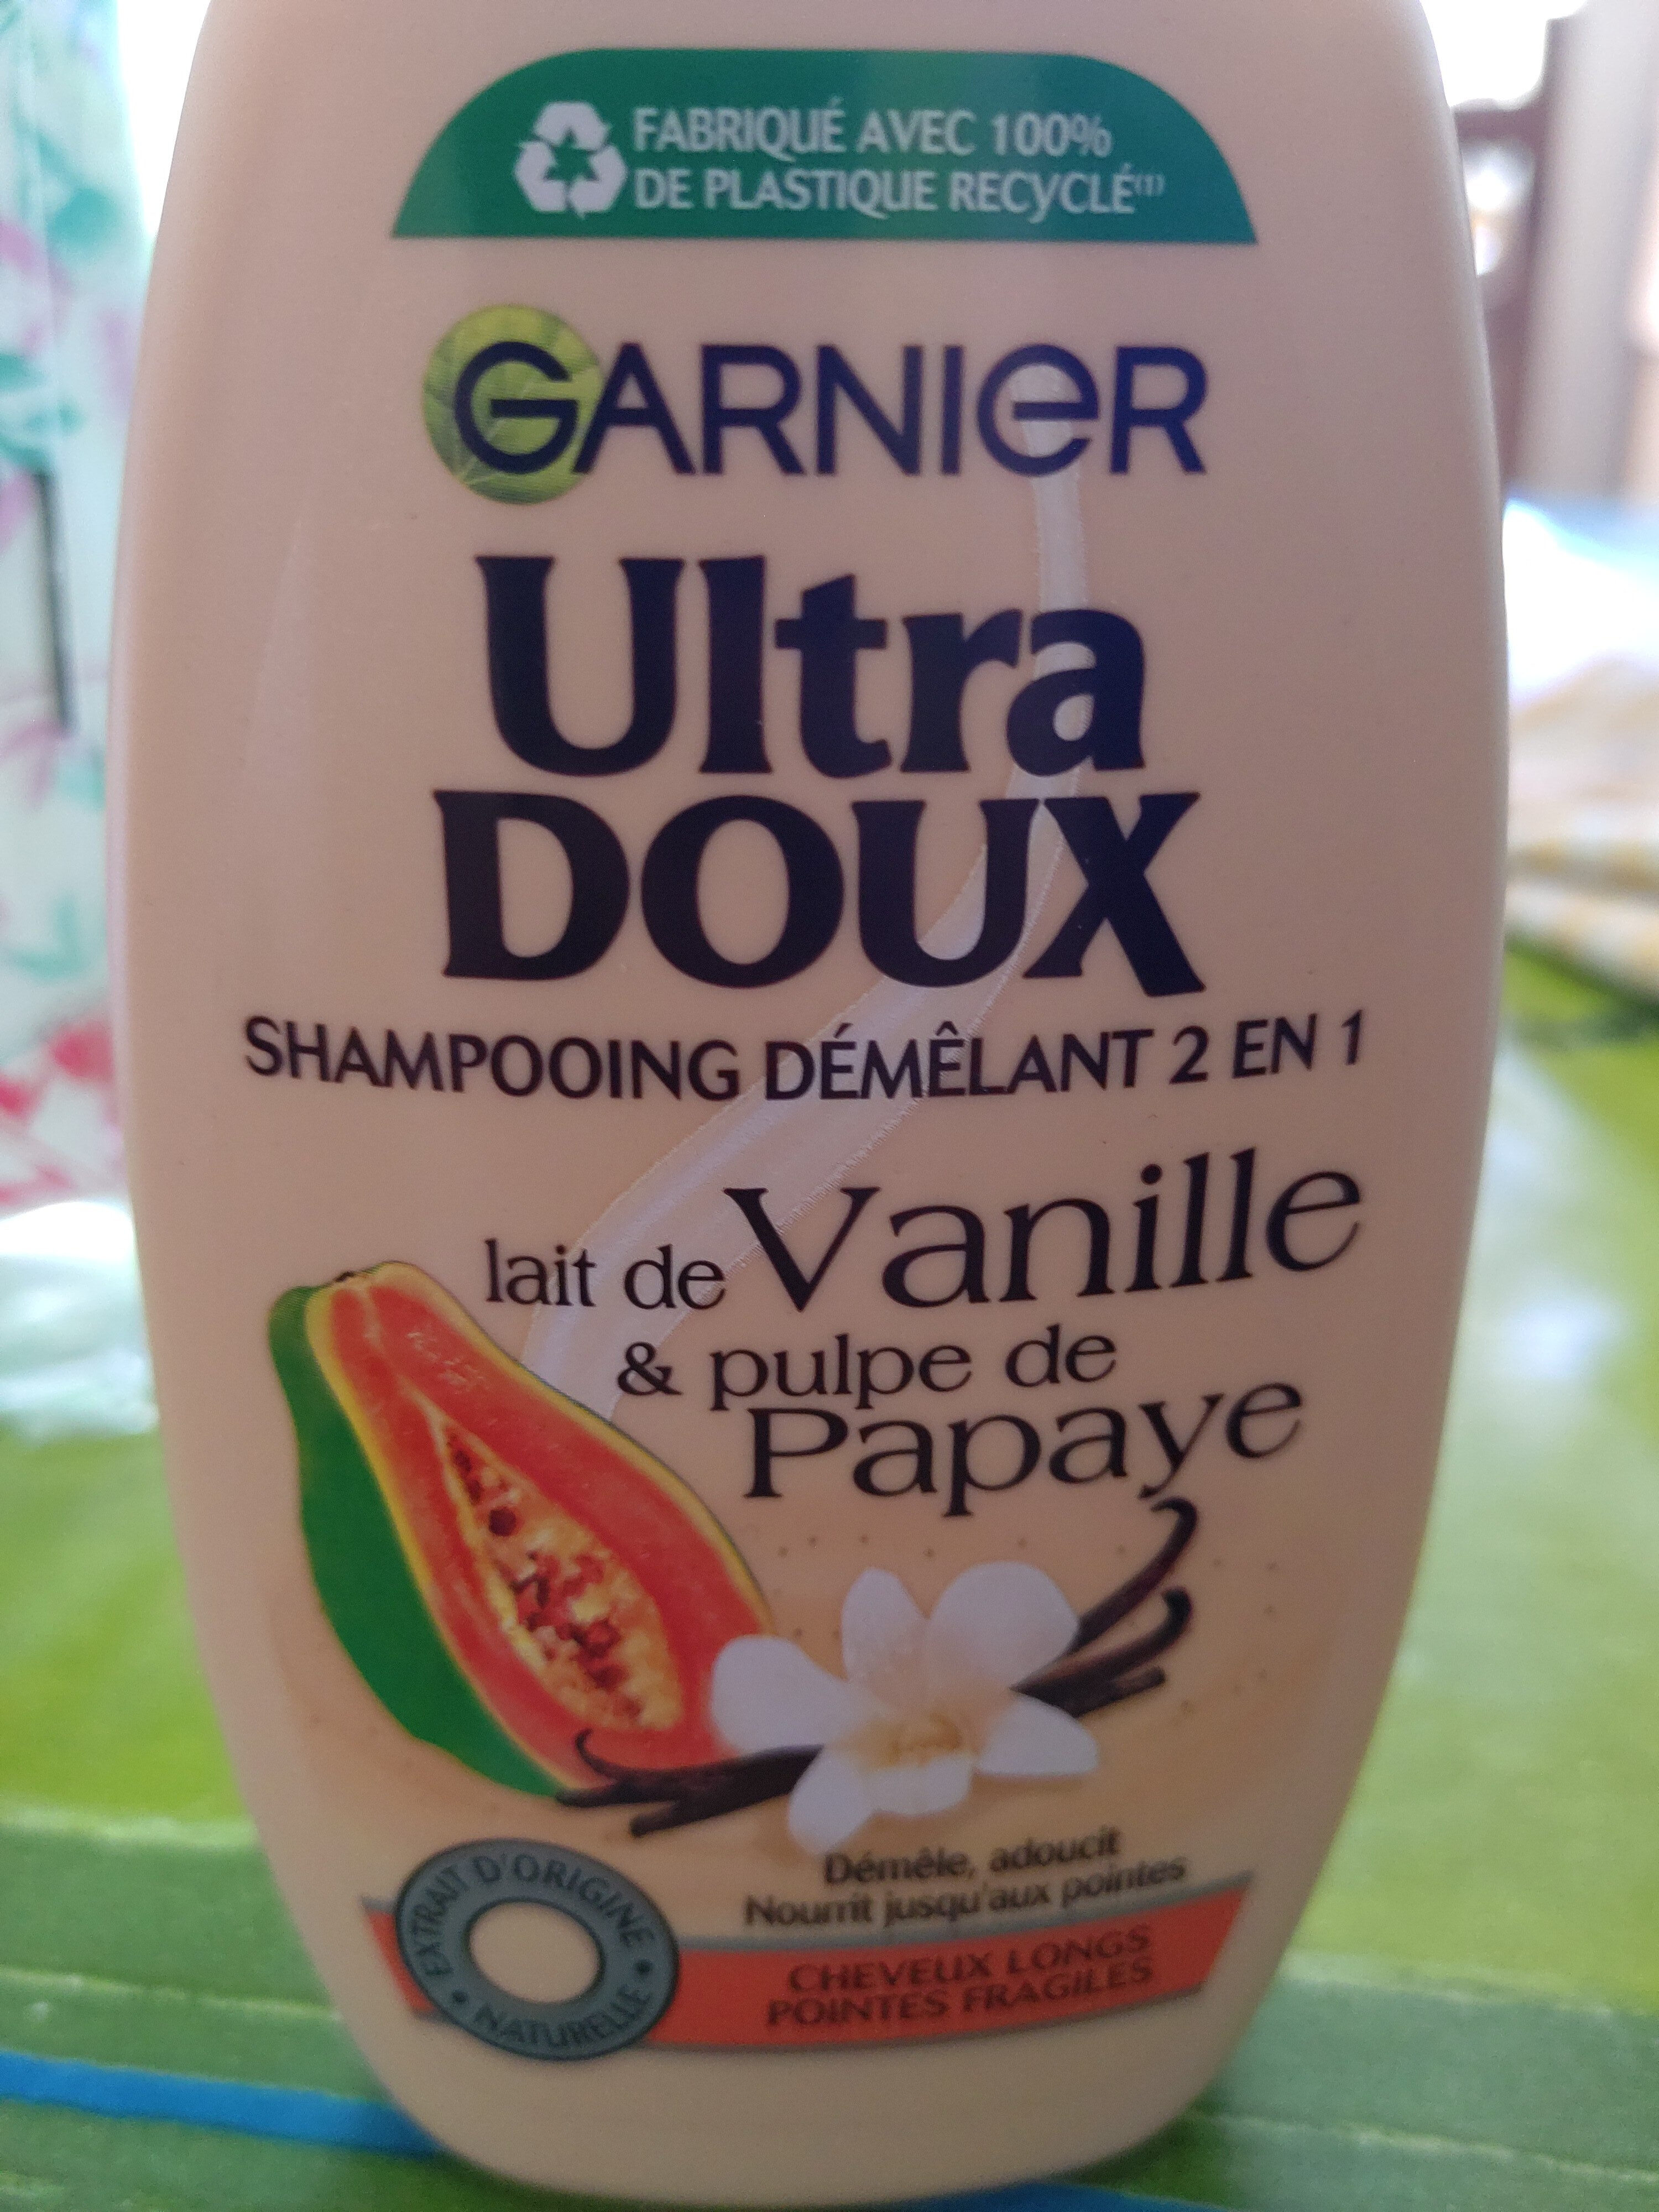 Shampooing démélant - Product - fr